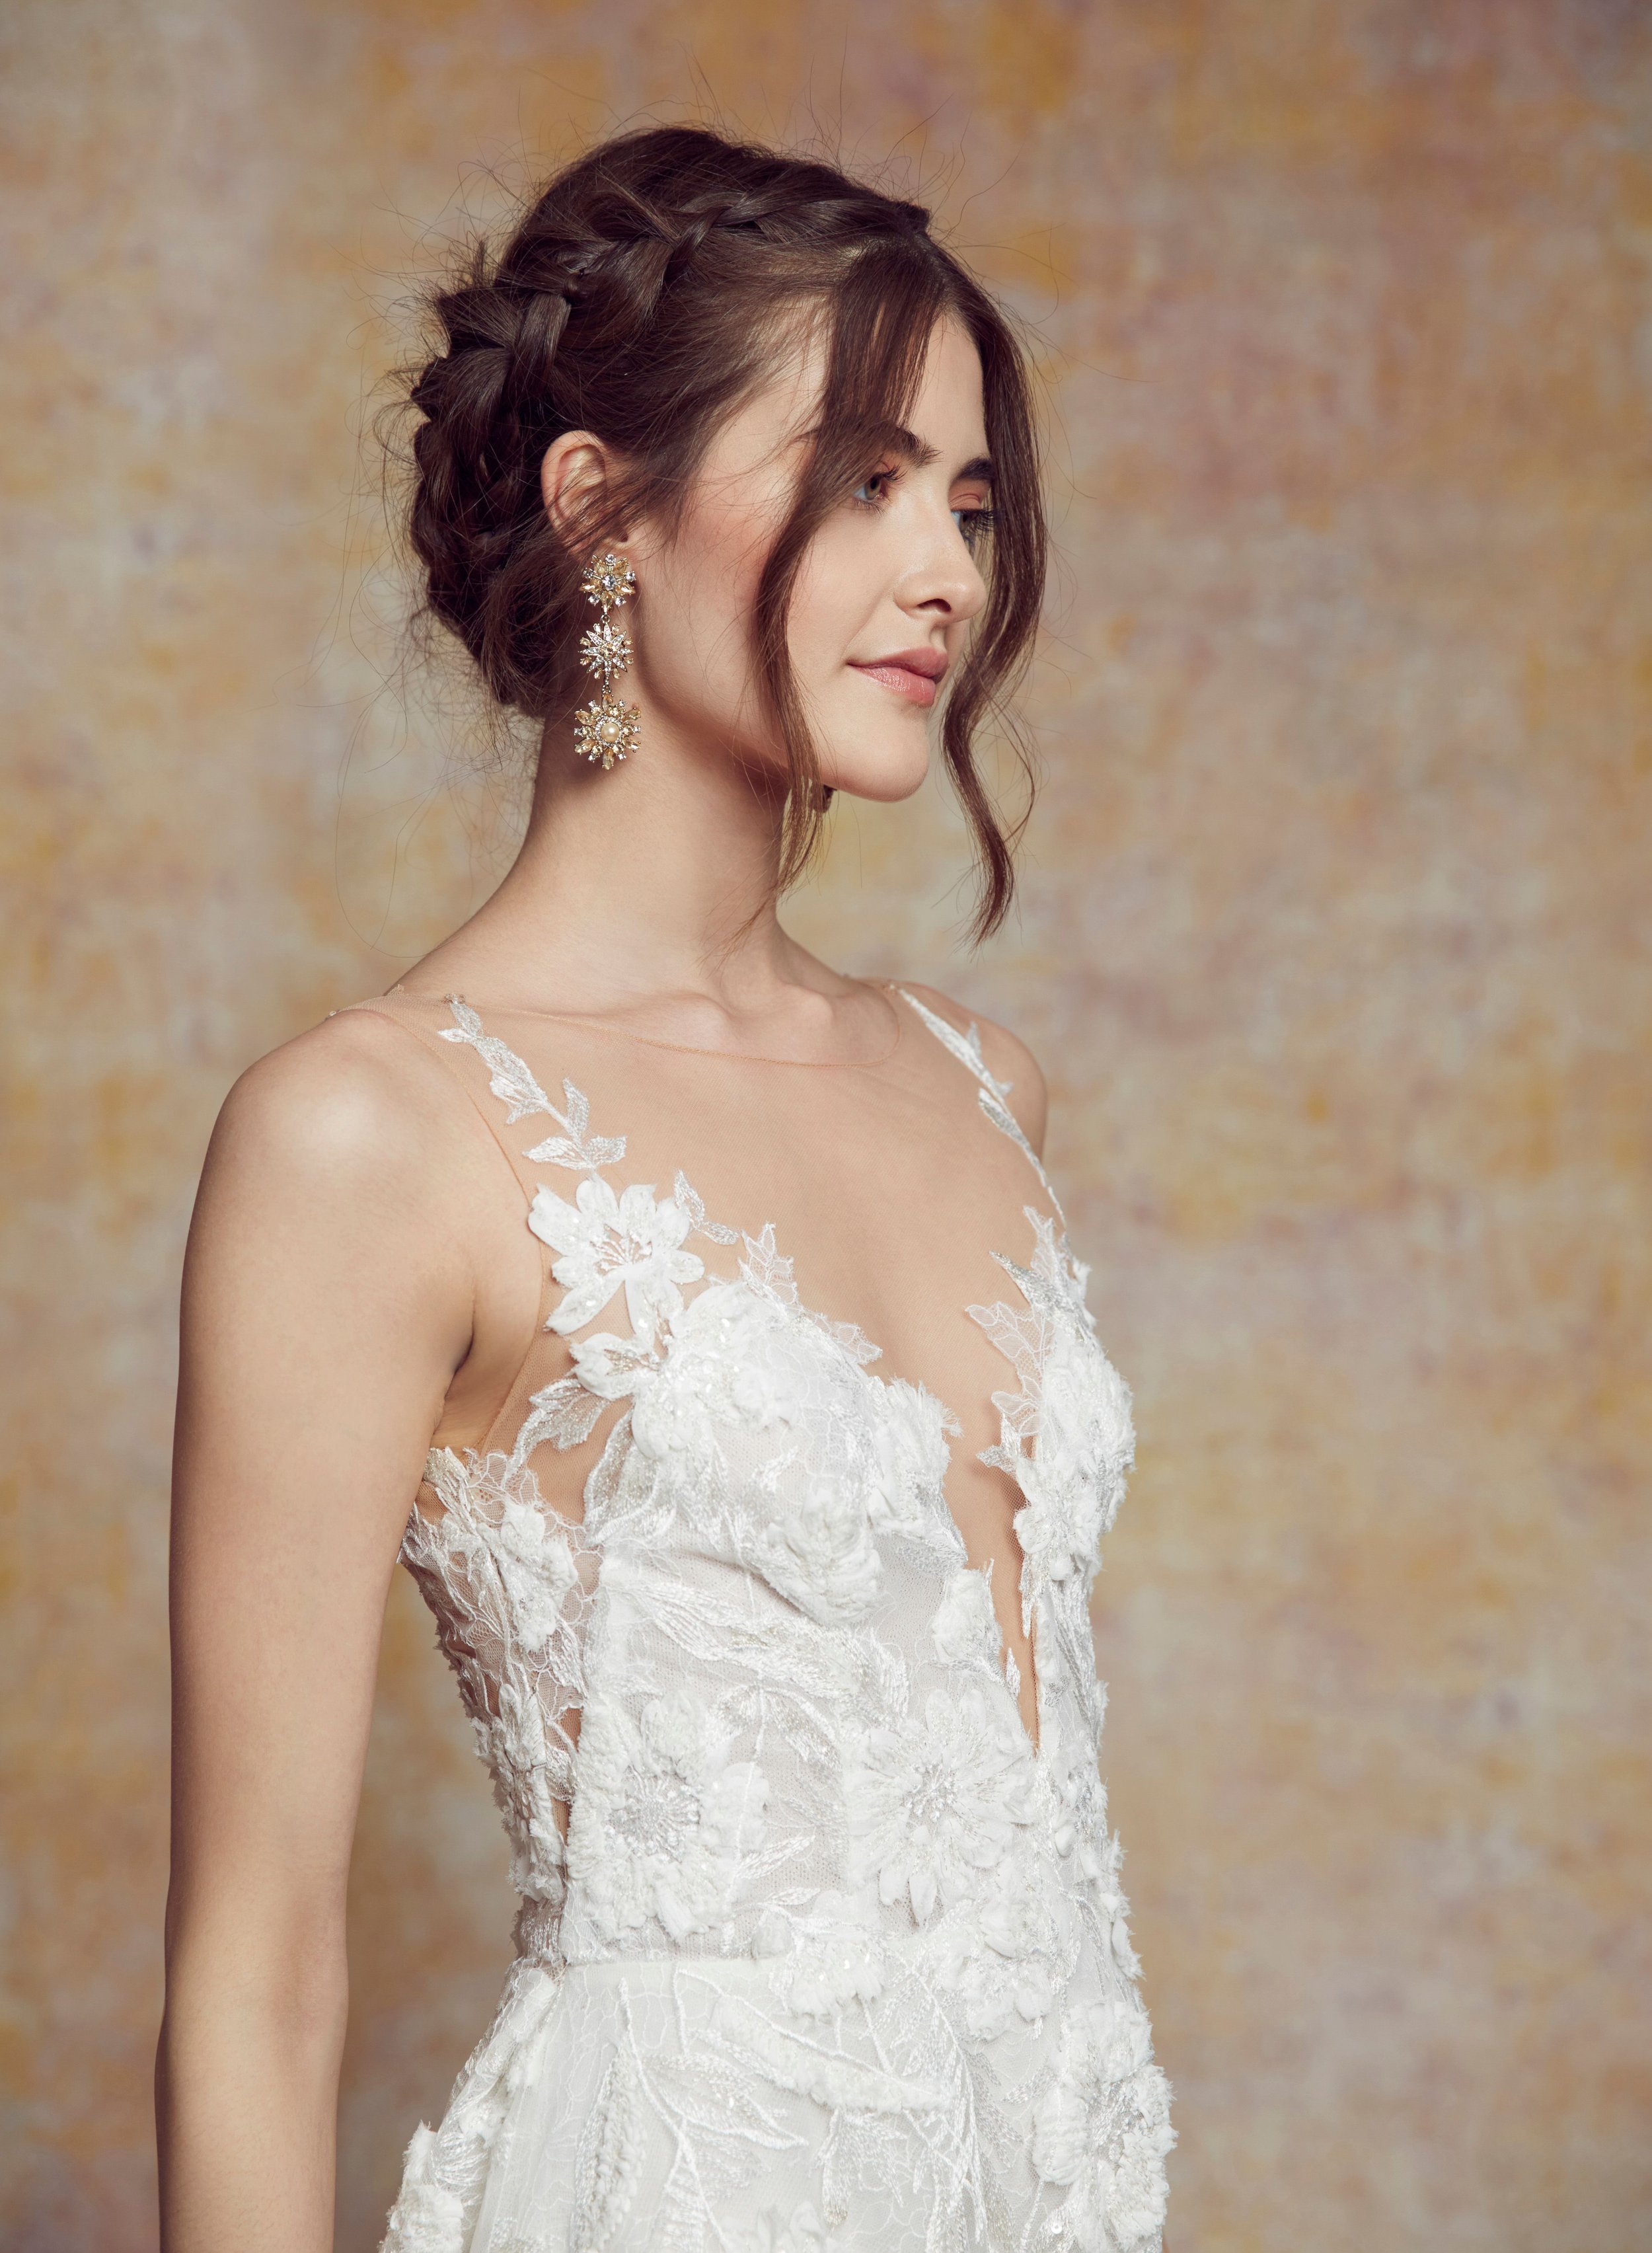 blanc-de-blanc-bridal-boutique-cleveland-dress-wedding-gown-Carmen..jpeg